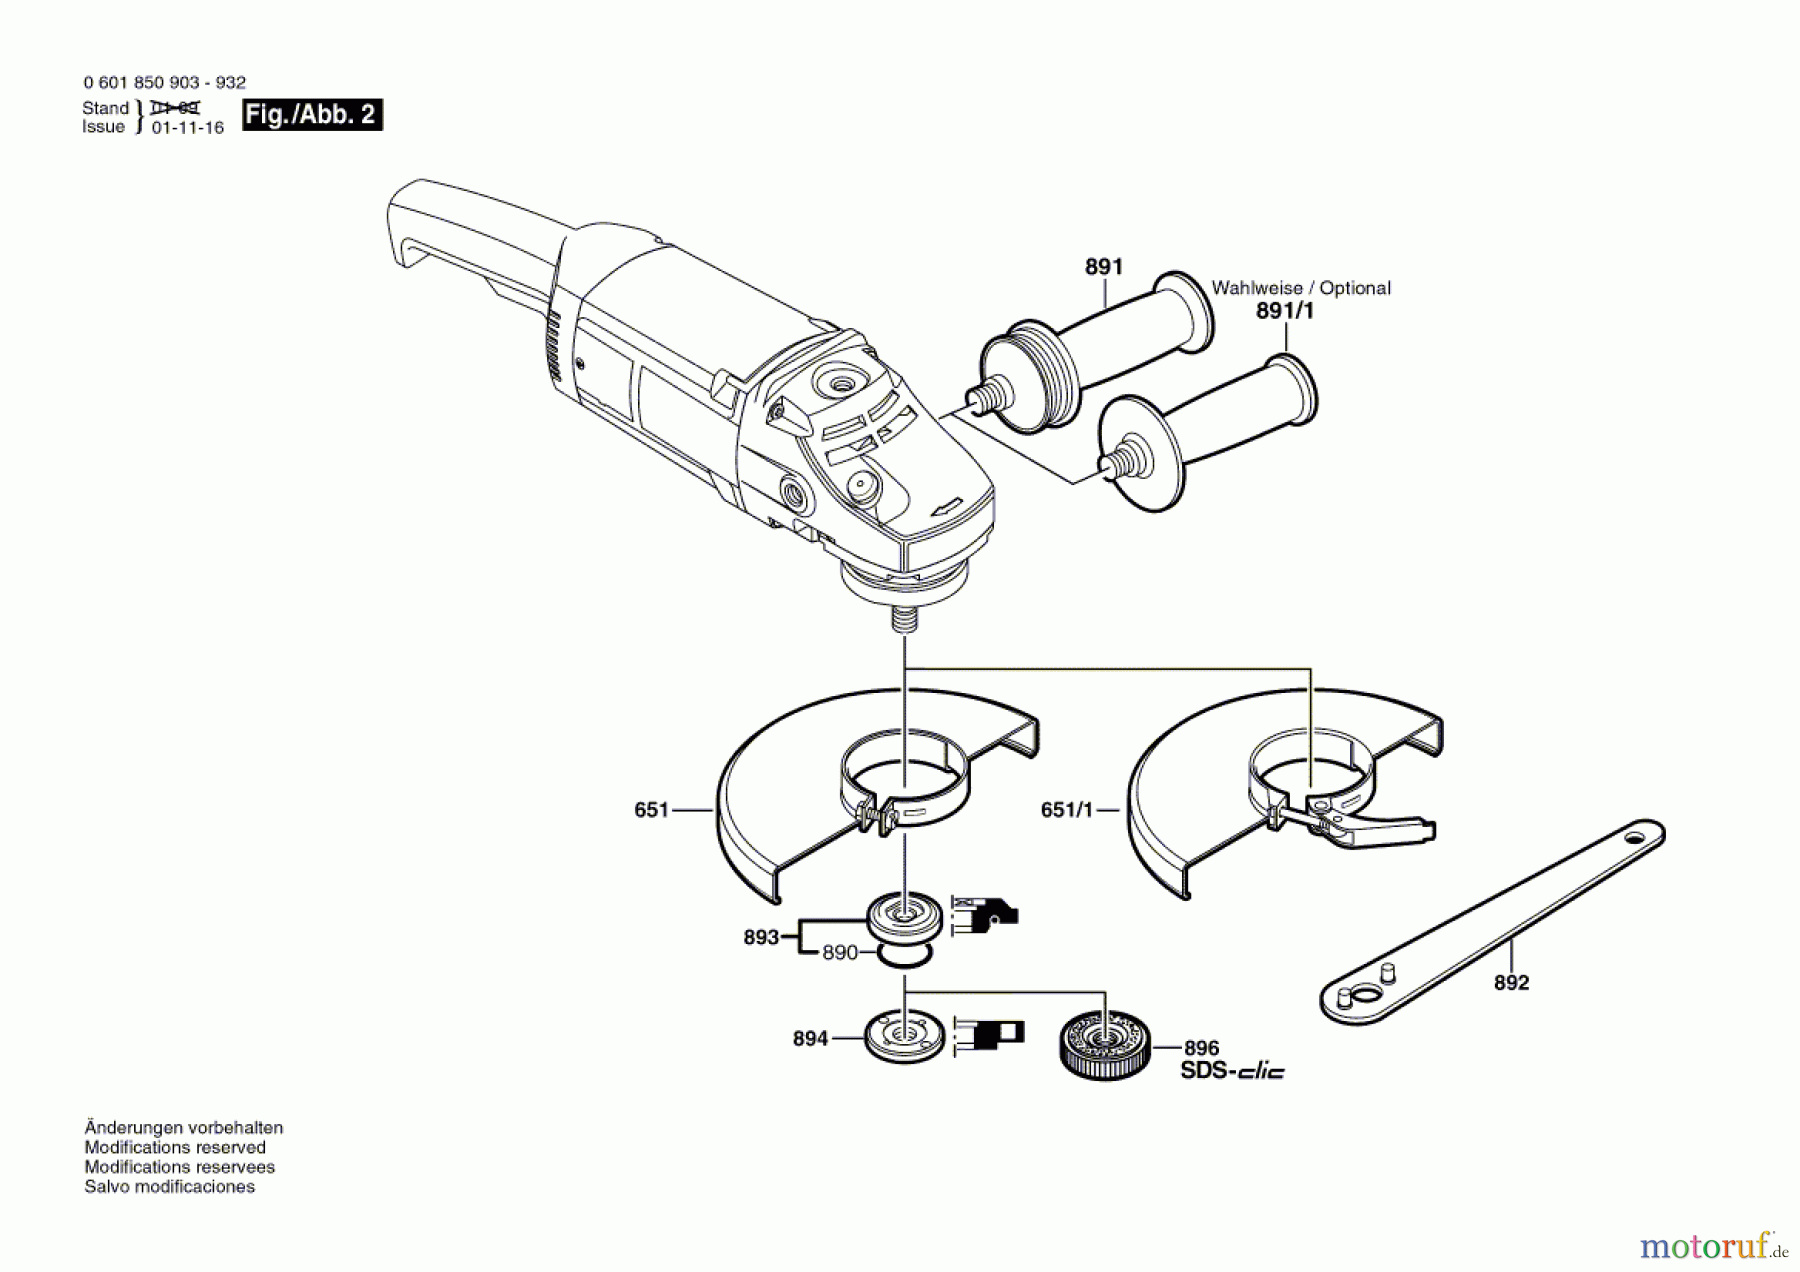  Bosch Werkzeug Winkelschleifer GWS 20-230 JH Seite 2